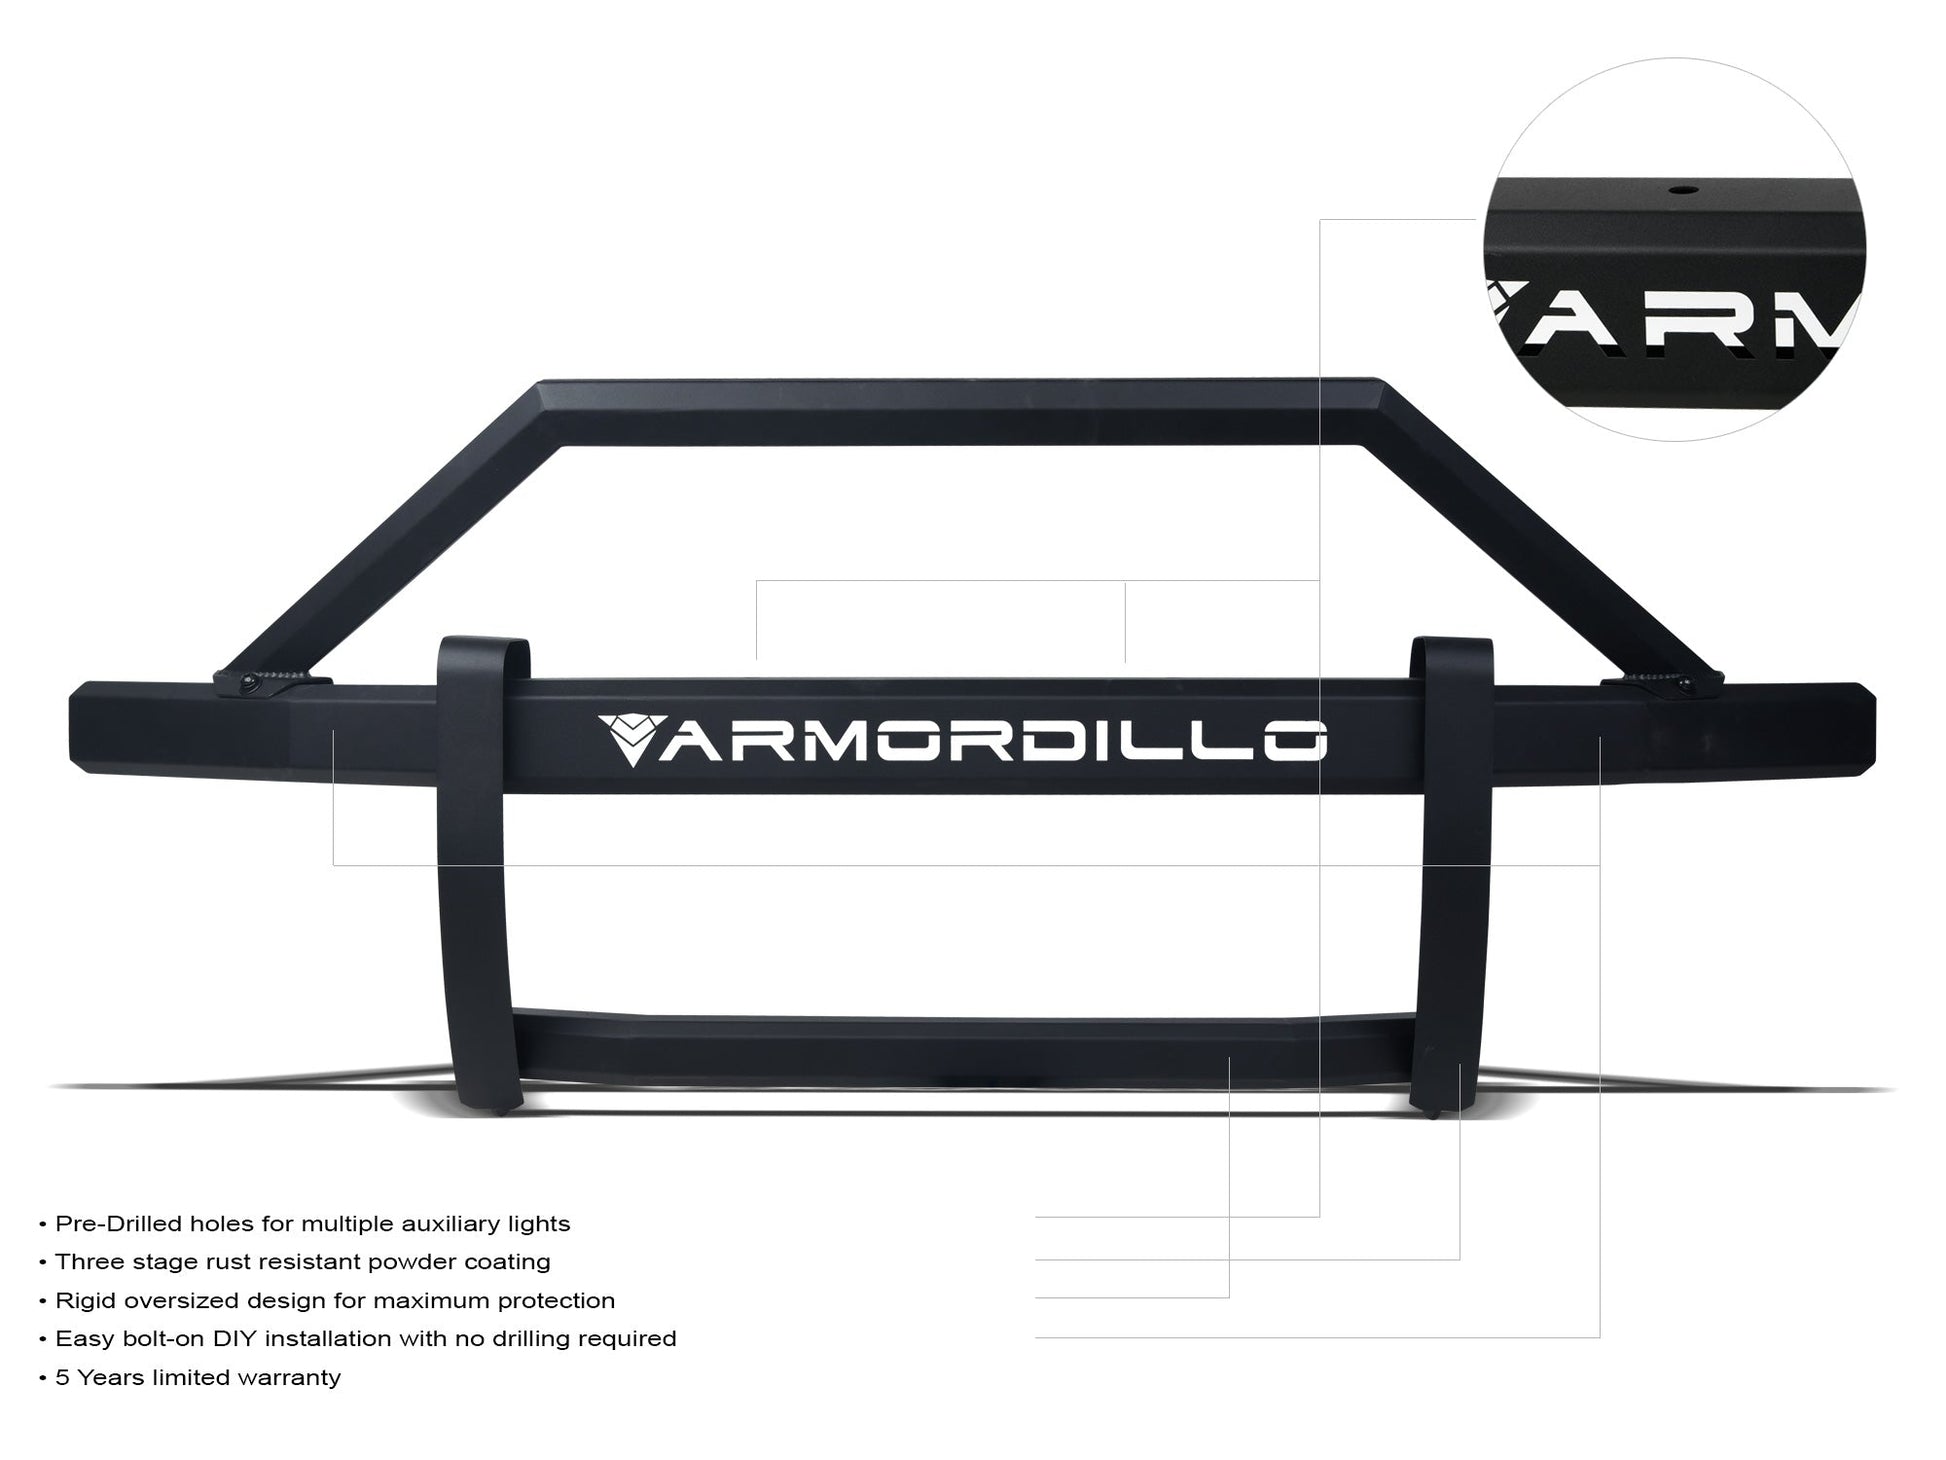 Armordillo 2009-2018 Dodge Ram 1500 AR2 Pre-Runner Guard - Matte Black - Bayson R Motorsports